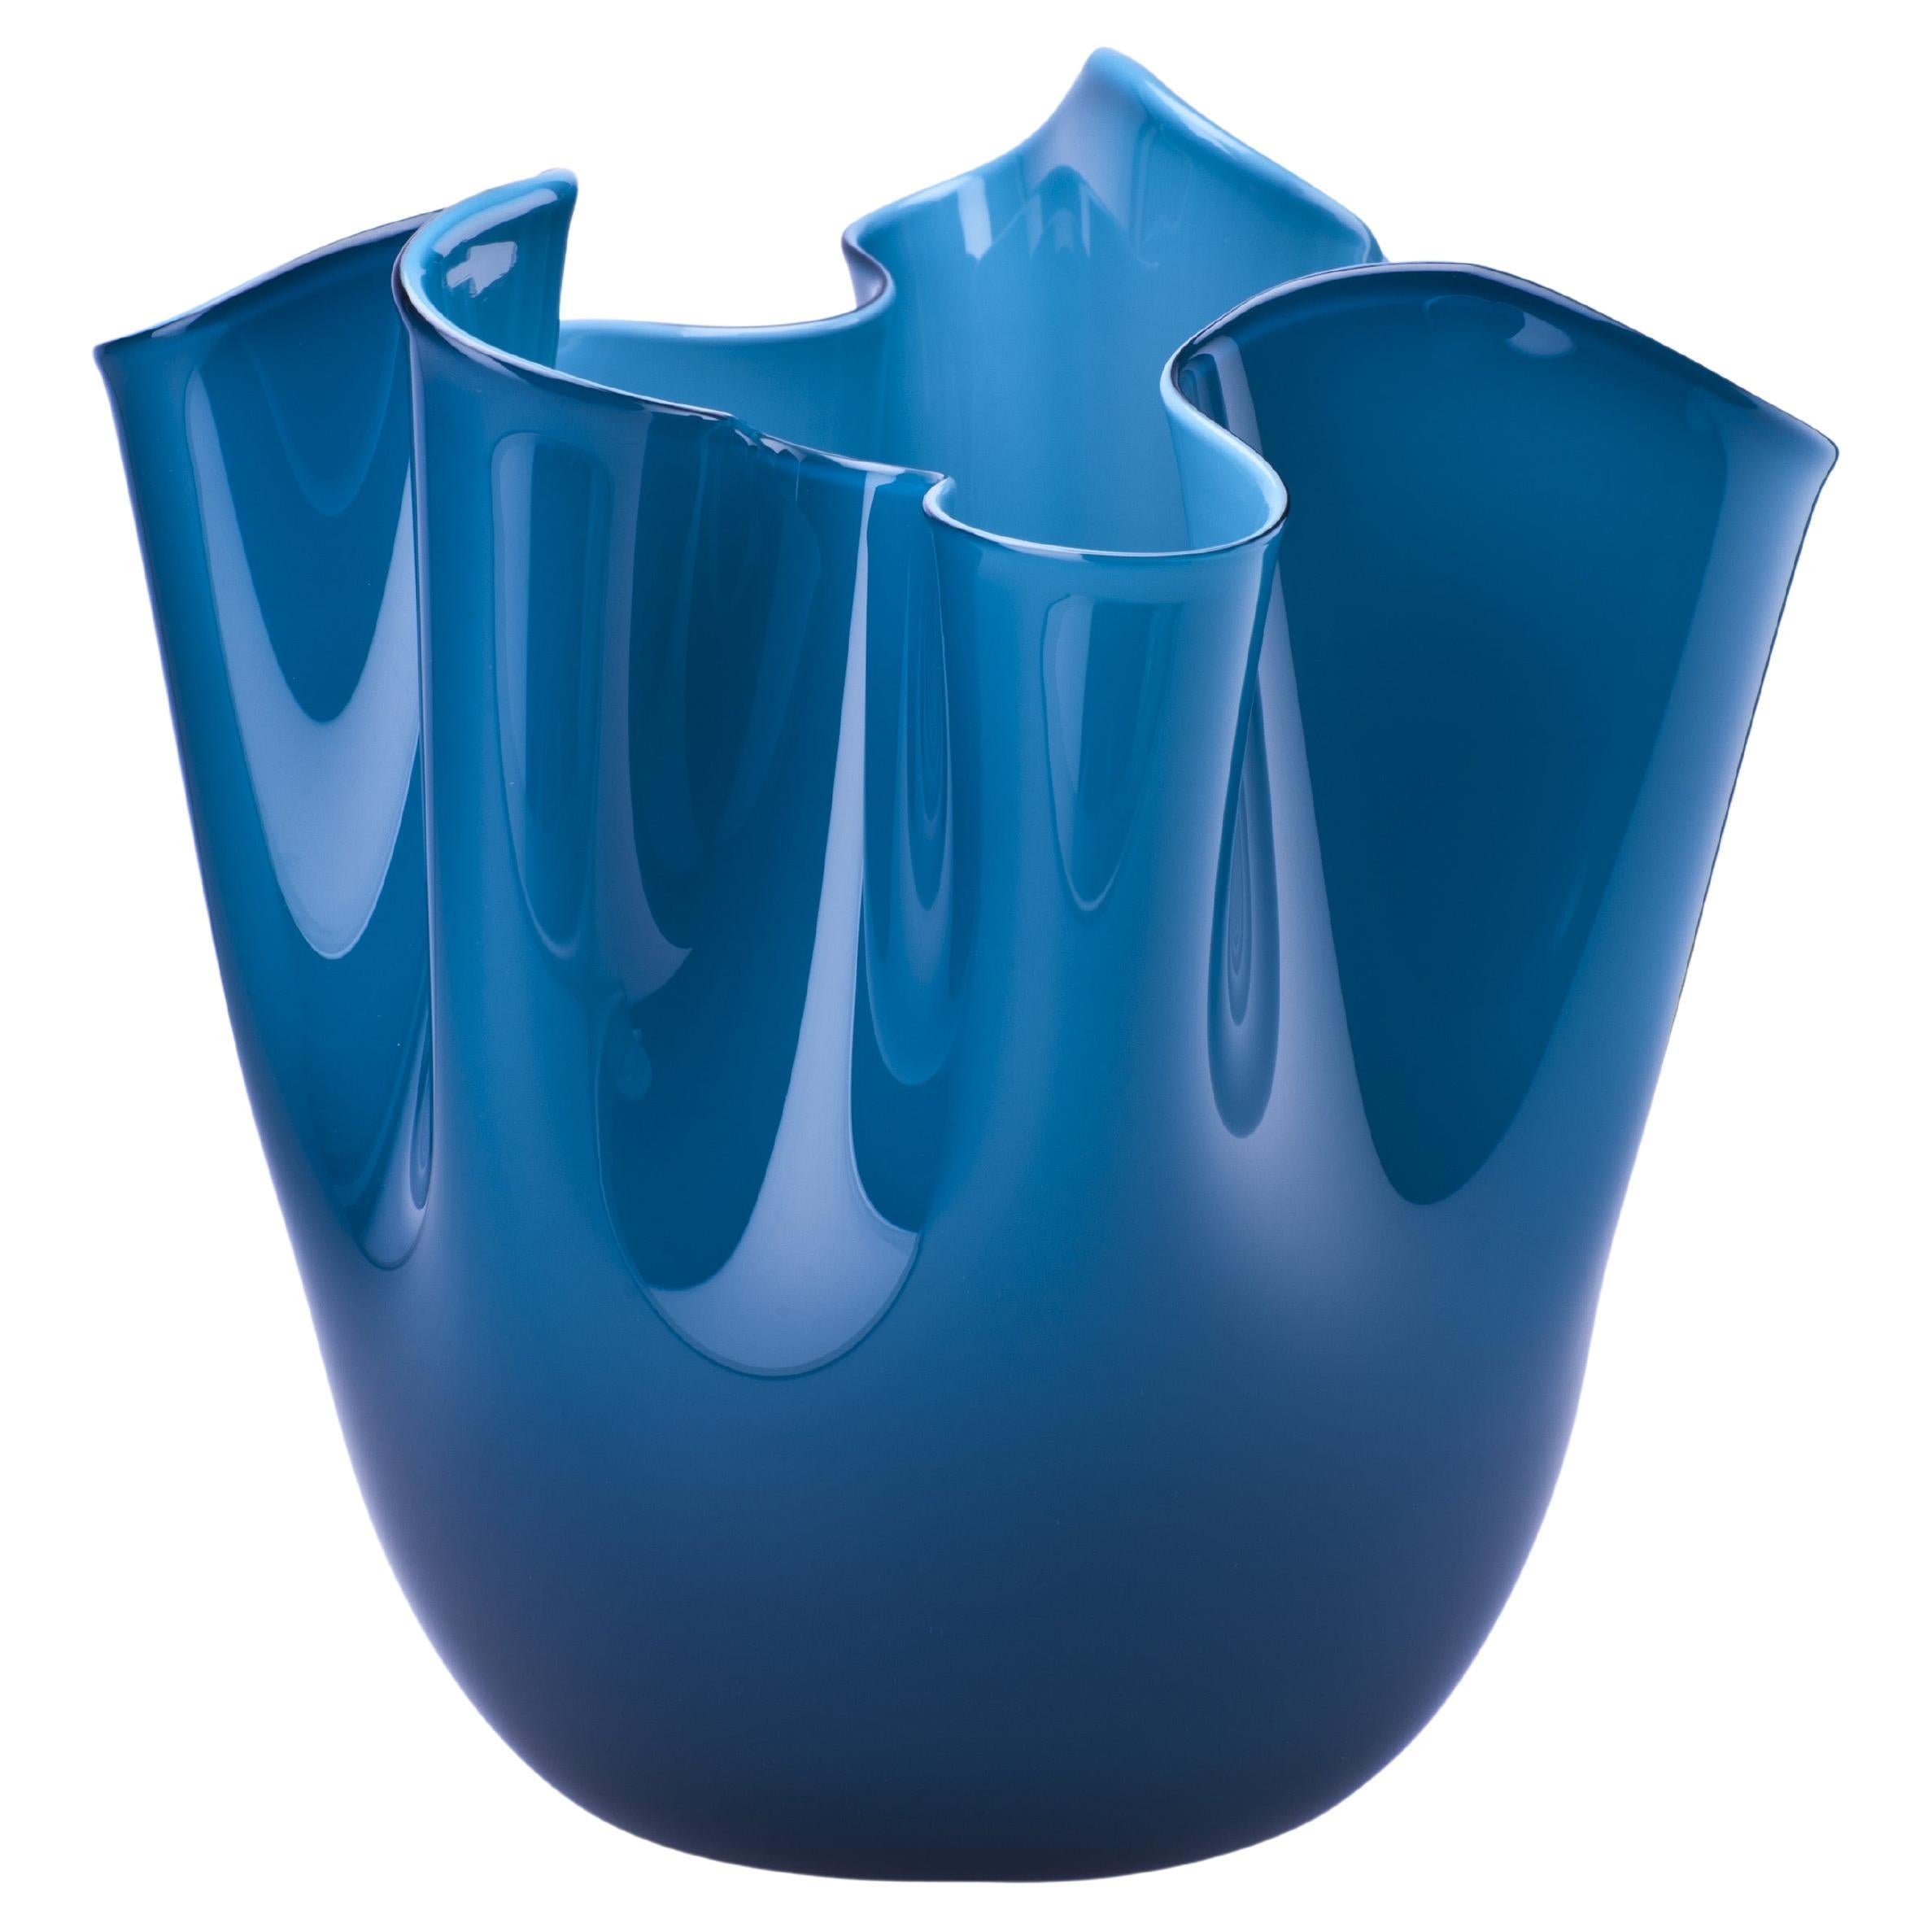 Fazzoletto Opalino Large Glass Vase in Horizon by Fulvio Bianconi and Venini For Sale